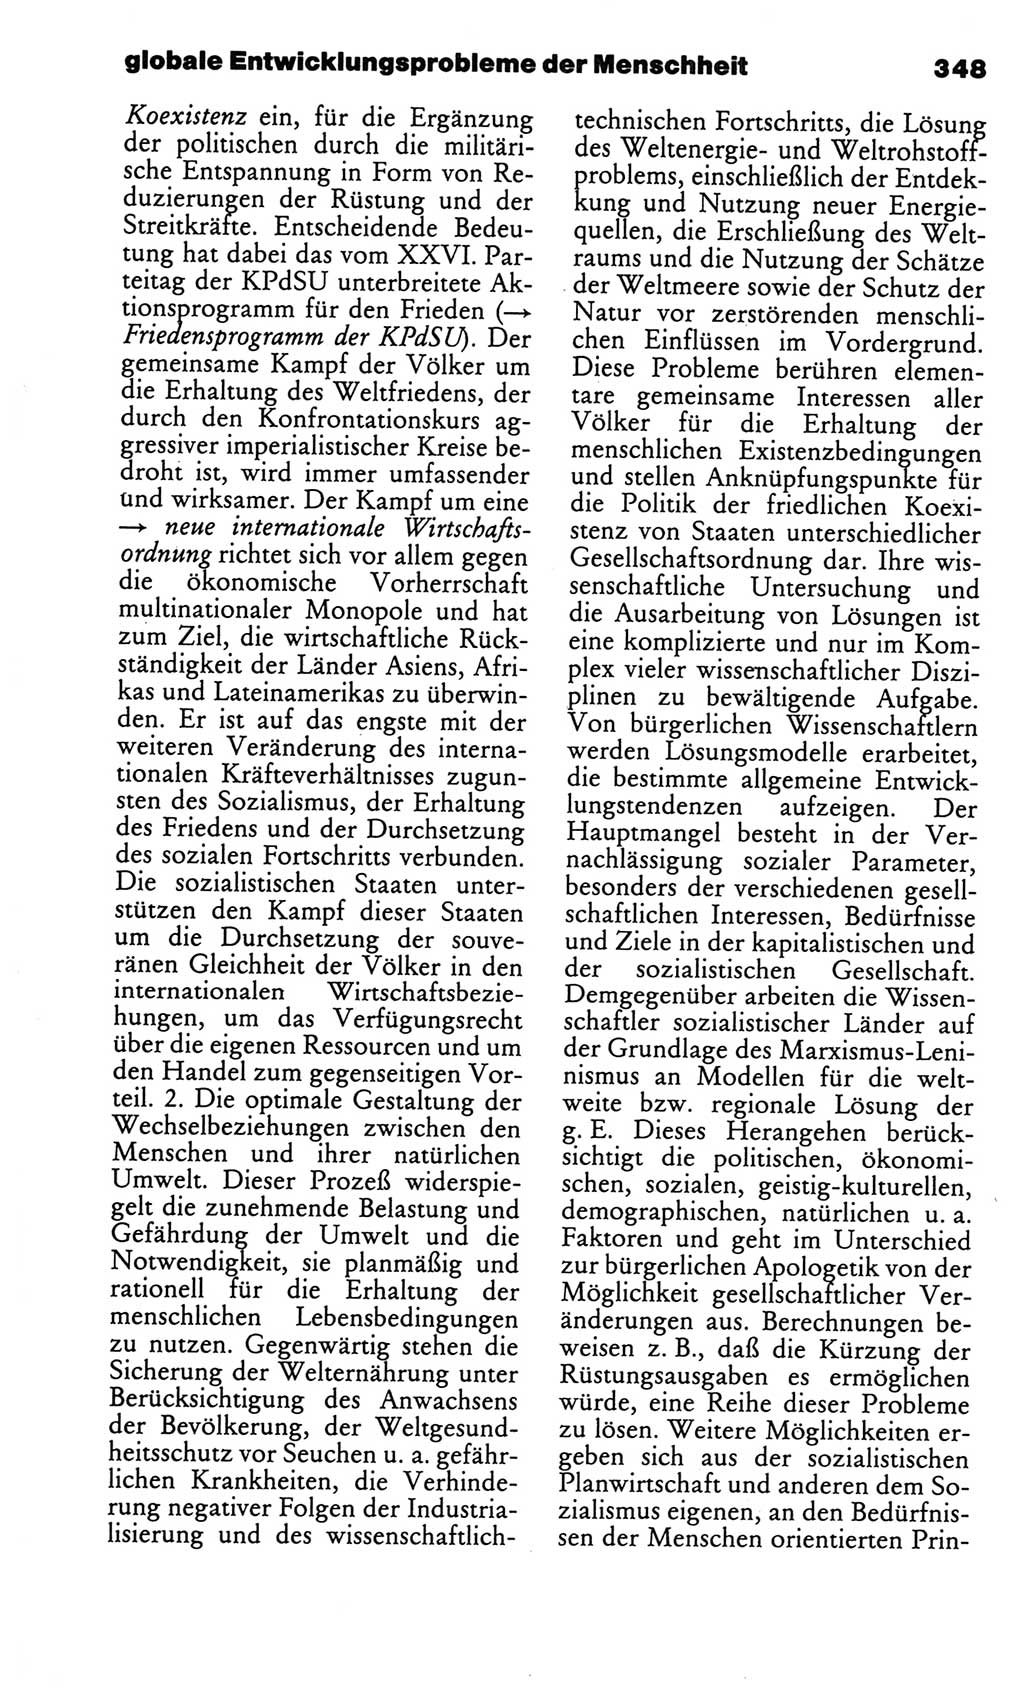 Kleines politisches Wörterbuch [Deutsche Demokratische Republik (DDR)] 1986, Seite 348 (Kl. pol. Wb. DDR 1986, S. 348)